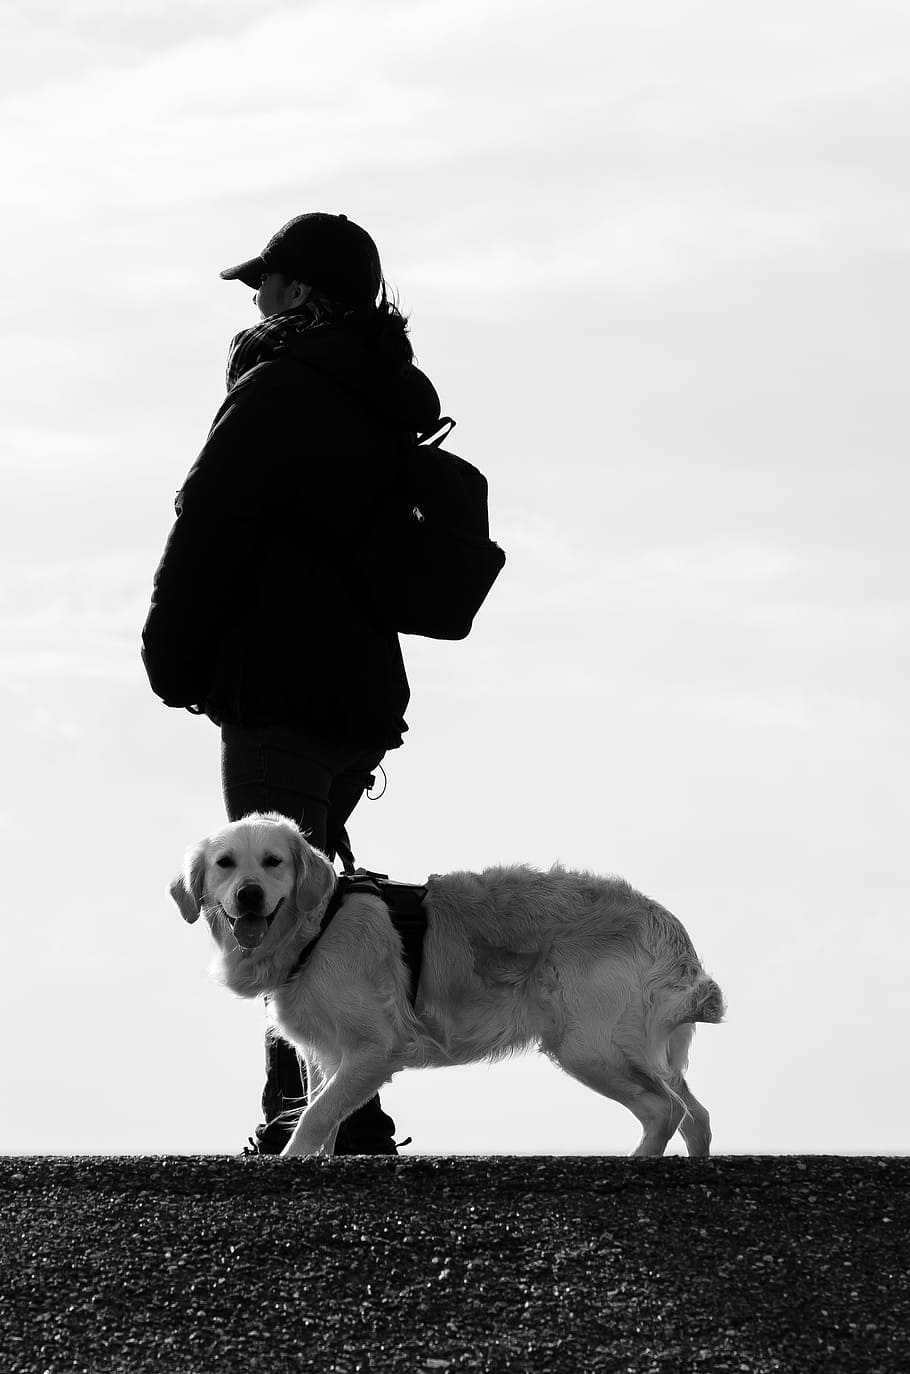 グレースケール写真, 人, 立っている, 横にある, ゴールデン, レトリーバー, 昼間, 犬, 人間, 動物